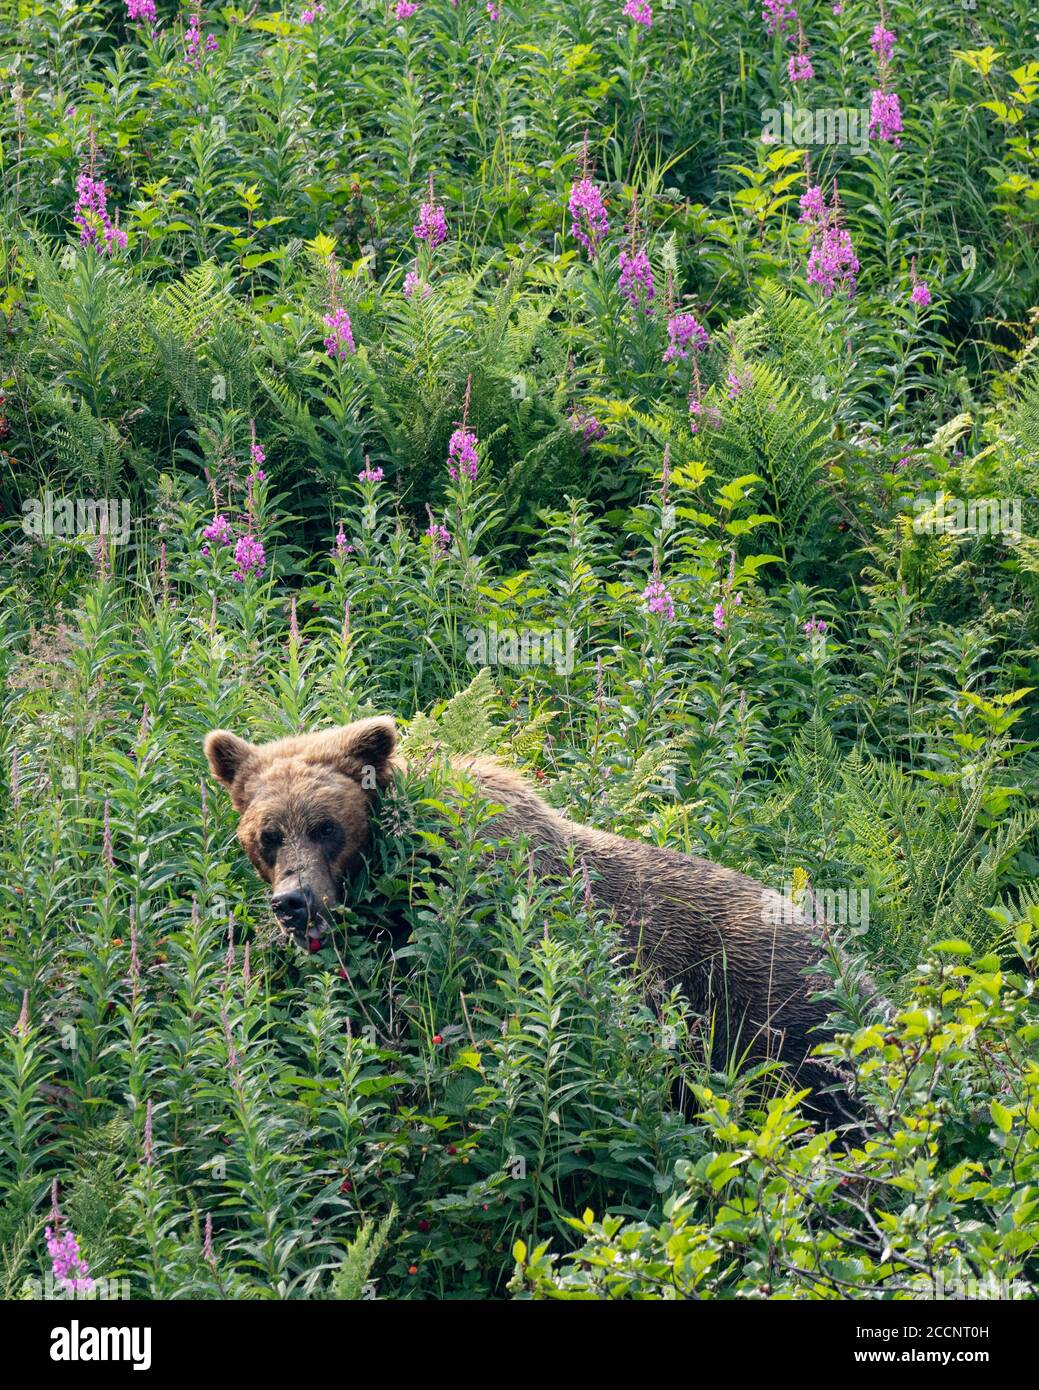 An adult brown bear, Ursus arctos, in Geographic Harbor, Katmai National Park, Alaska, USA. Stock Photo